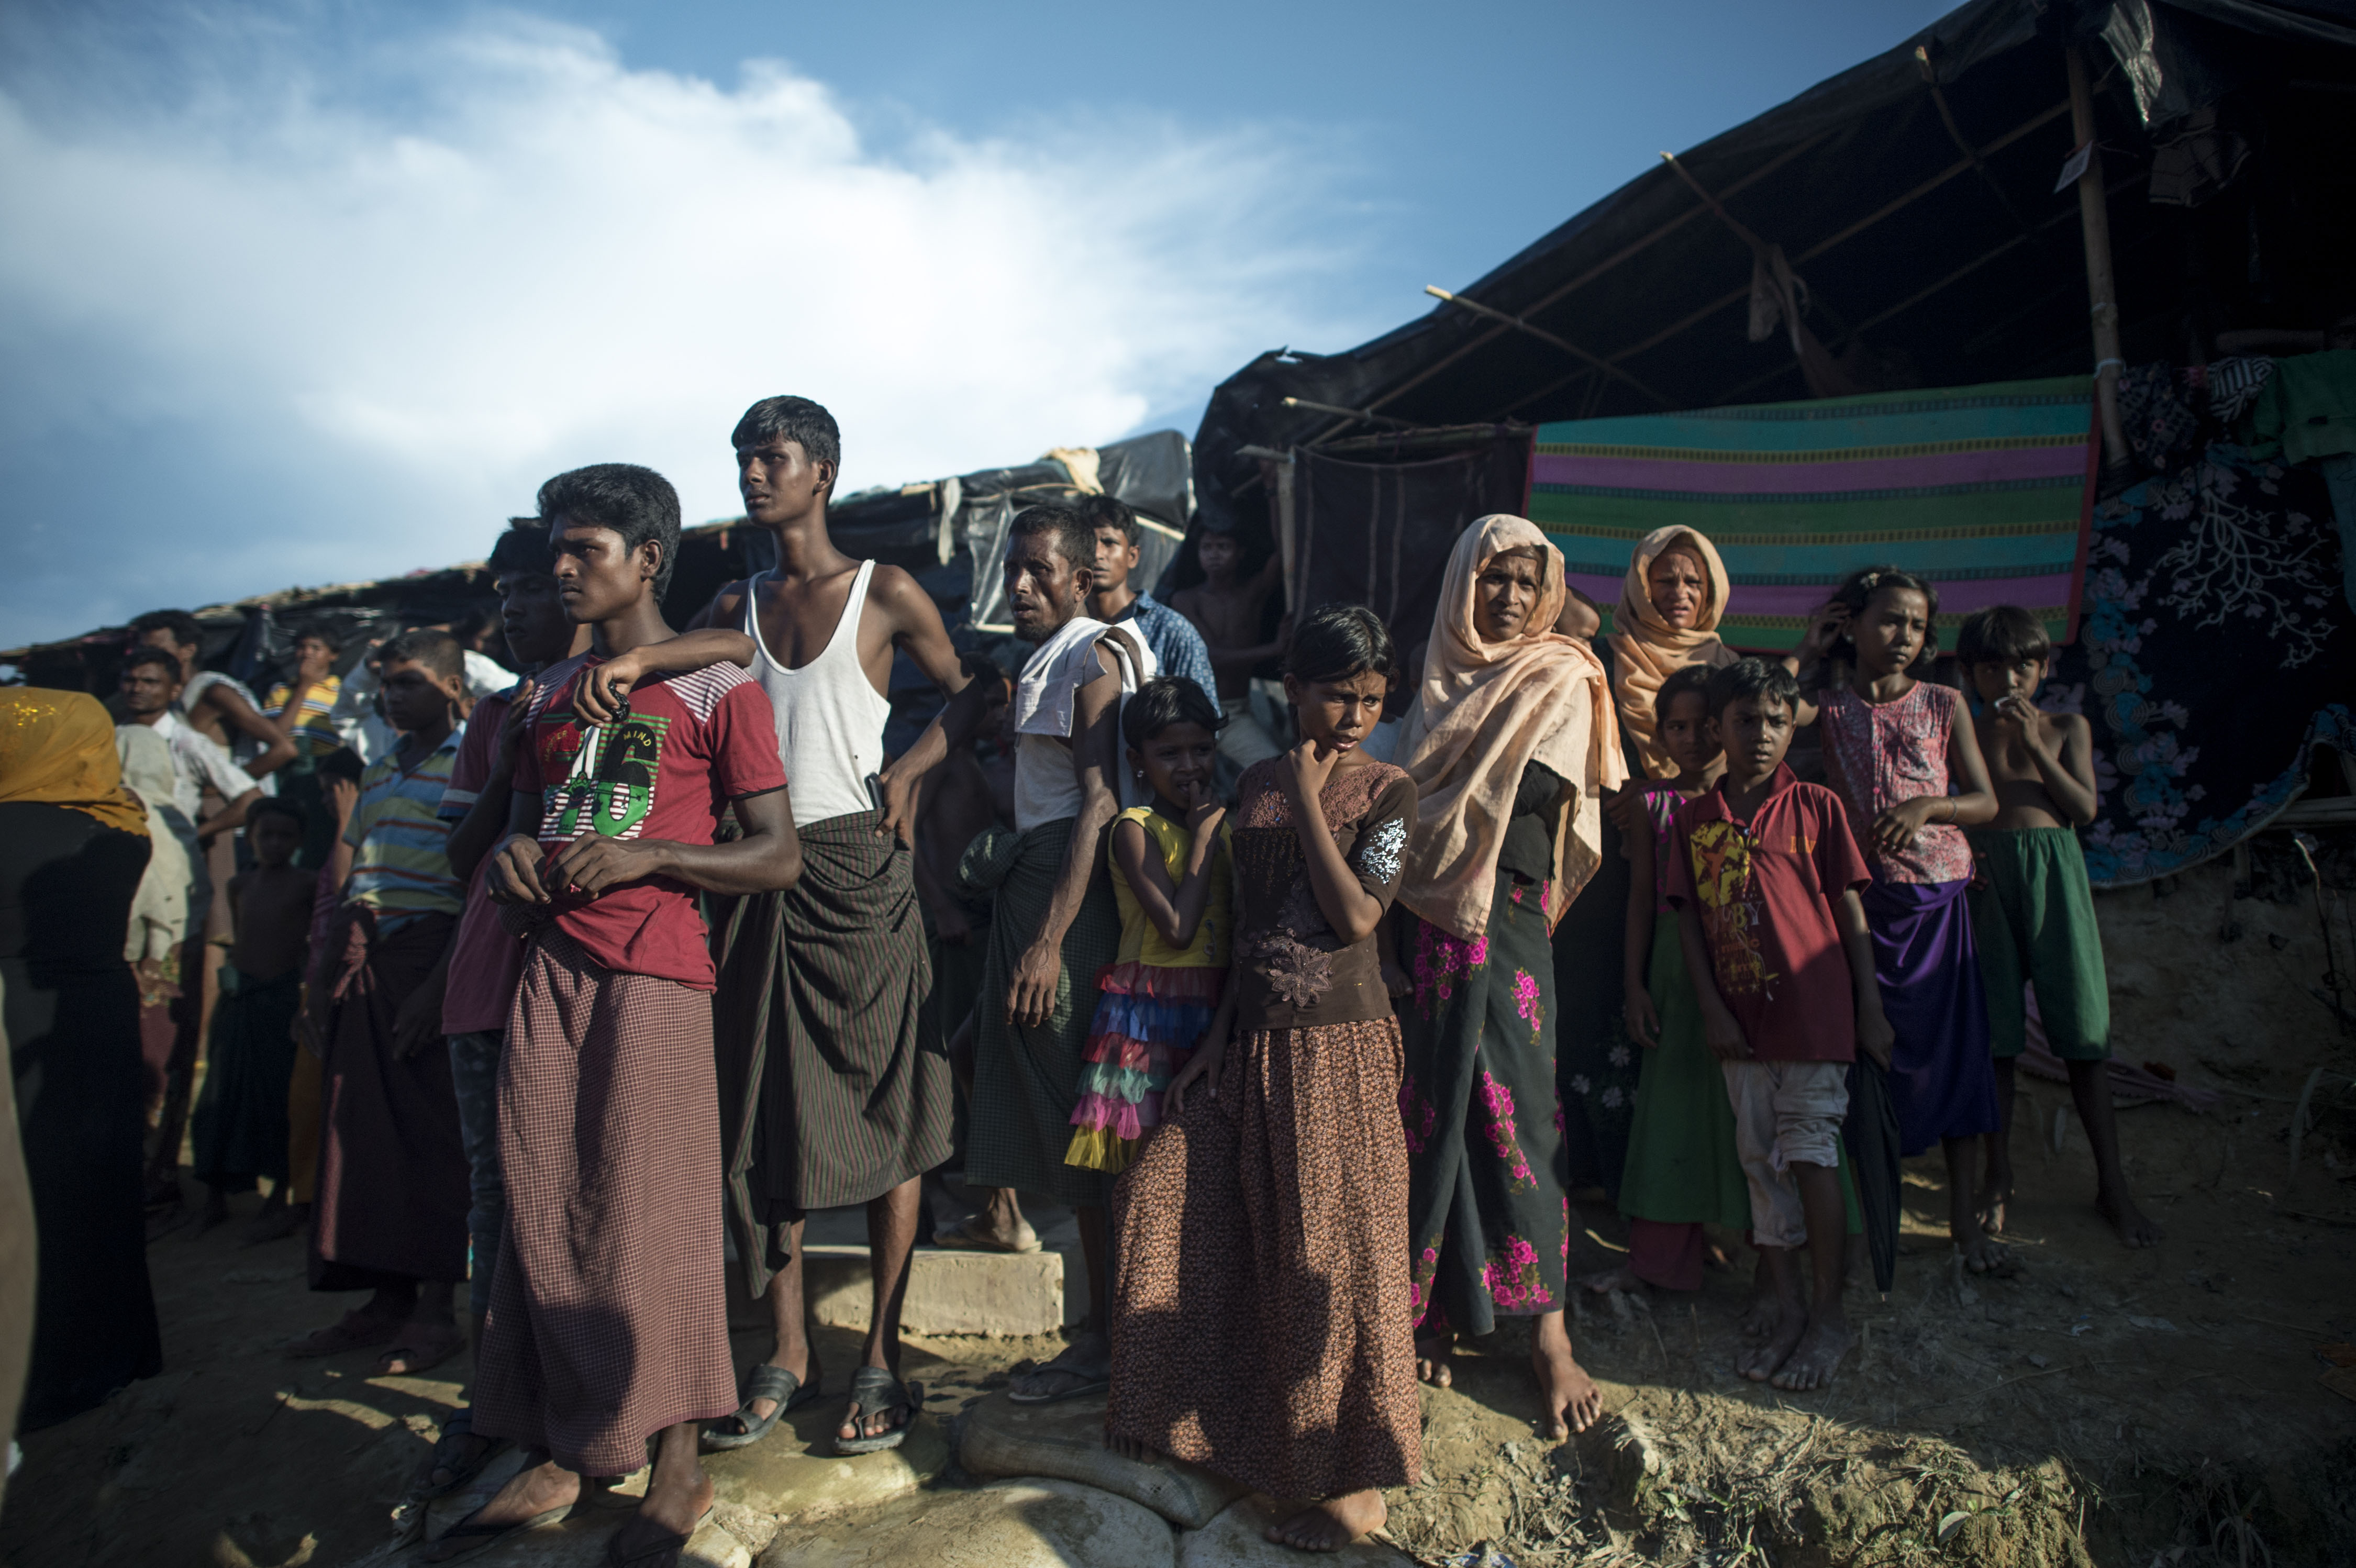 Pengungsi Rohingnya menyaksikan distribusi pangan di kamp pengunsi Balukhali di distrik Ukhia, 4 oktober 2017. Dalam satu bulan terakhir Lebih dari 500.000 warga muslim Rohingnya melarikan diri dari kekerasan berdarah di Myanmar dan angkanya kembali melonjak, dengan Bangladesh melaporkan kini 4.000-5.000 warga menyeberang setiap harinya setelah sempat mengalami jeda. (FRED DUFOUR/AFP)	 